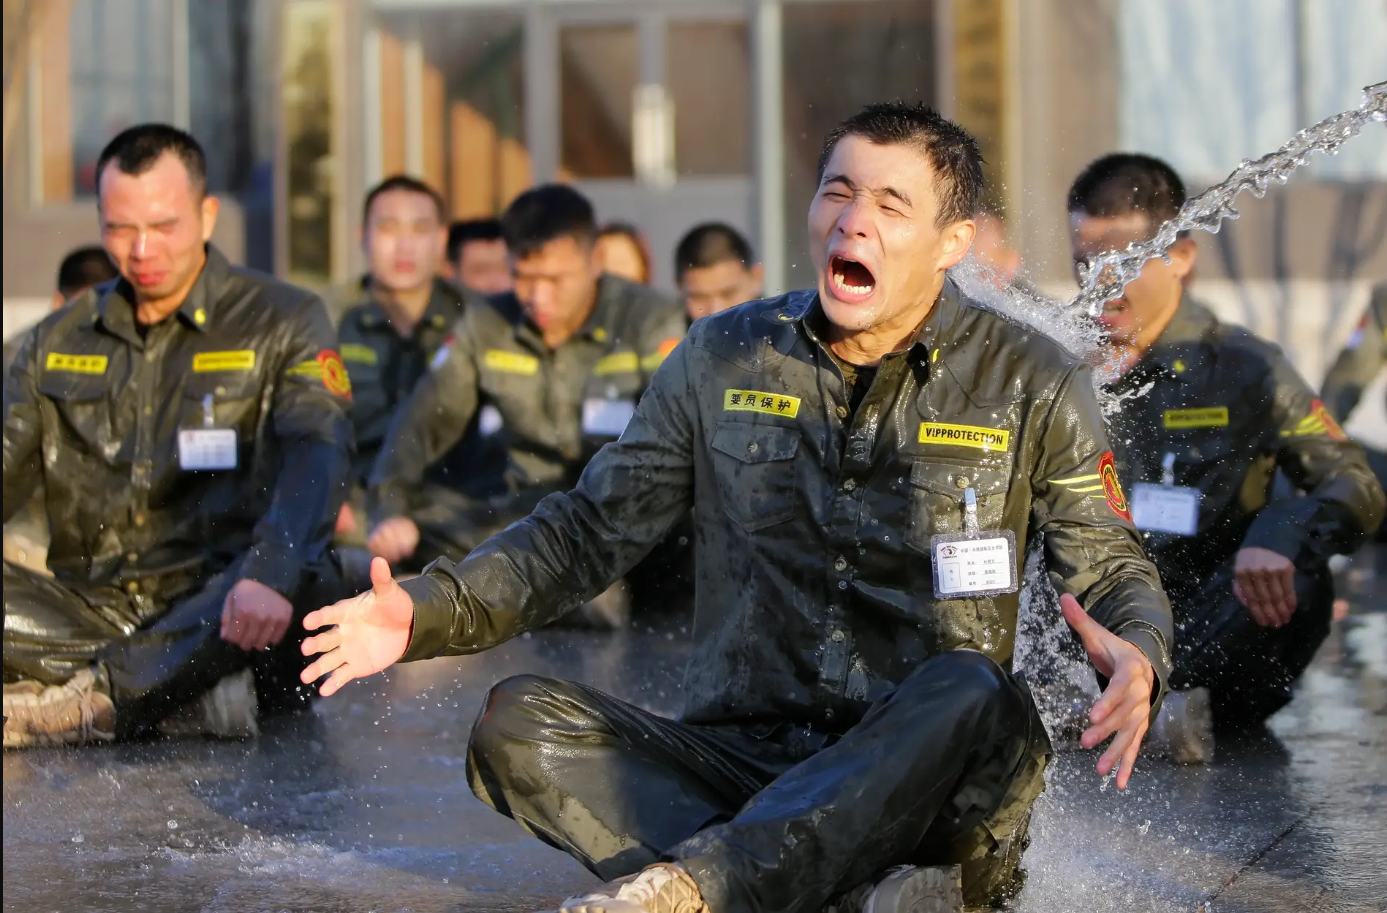 Đào tạo vệ sĩ ở Trung Quốc: Huấn luyện gian khổ, lương cả tỷ mỗi năm